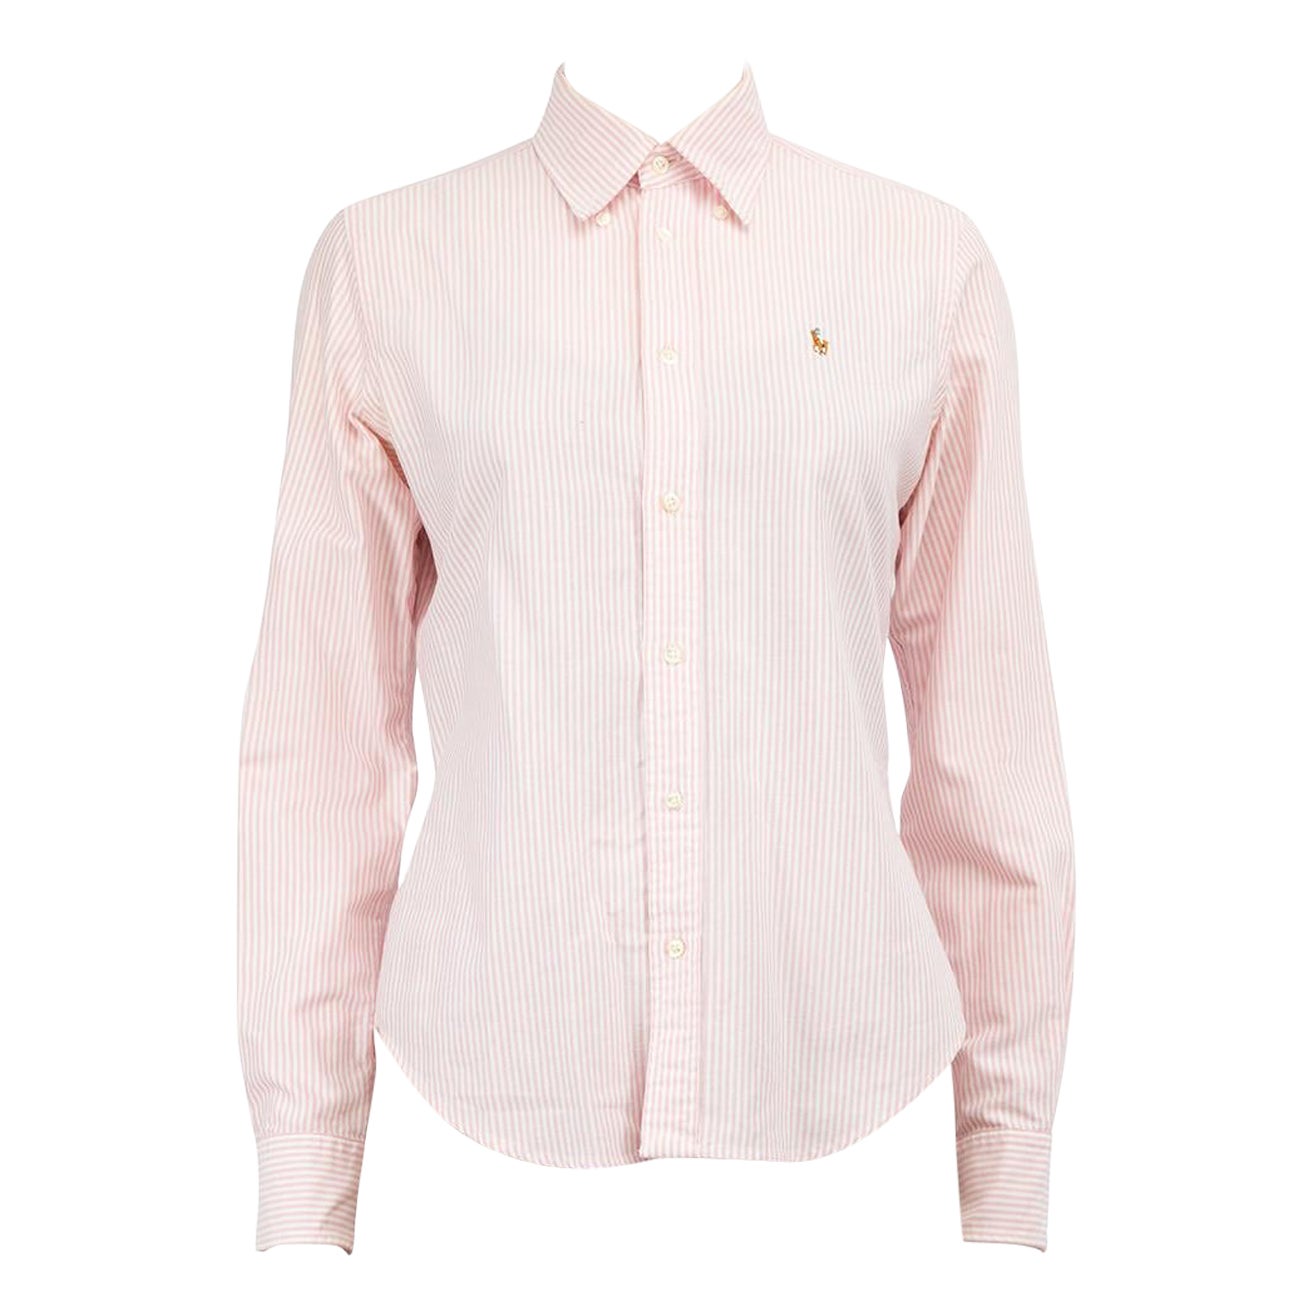 Ralph Lauren Pink Striped Long Sleeves Shirt Size M